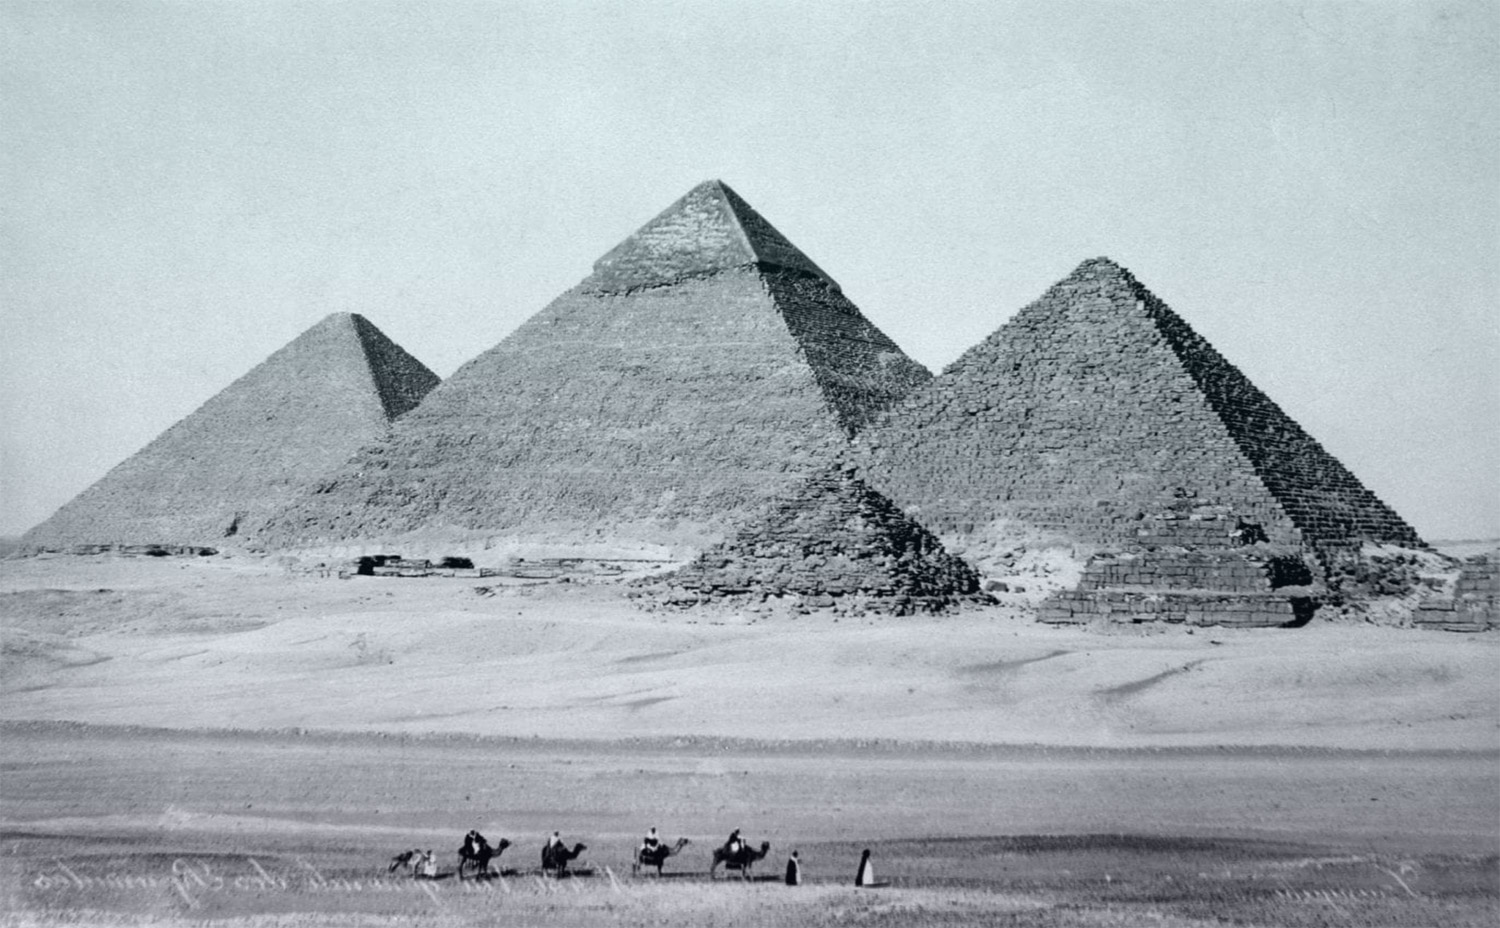 تقوم شركة كندية بإنشاء metaverse باستخدام NFT لإحياء مصر القديمة في العالم الافتراضي